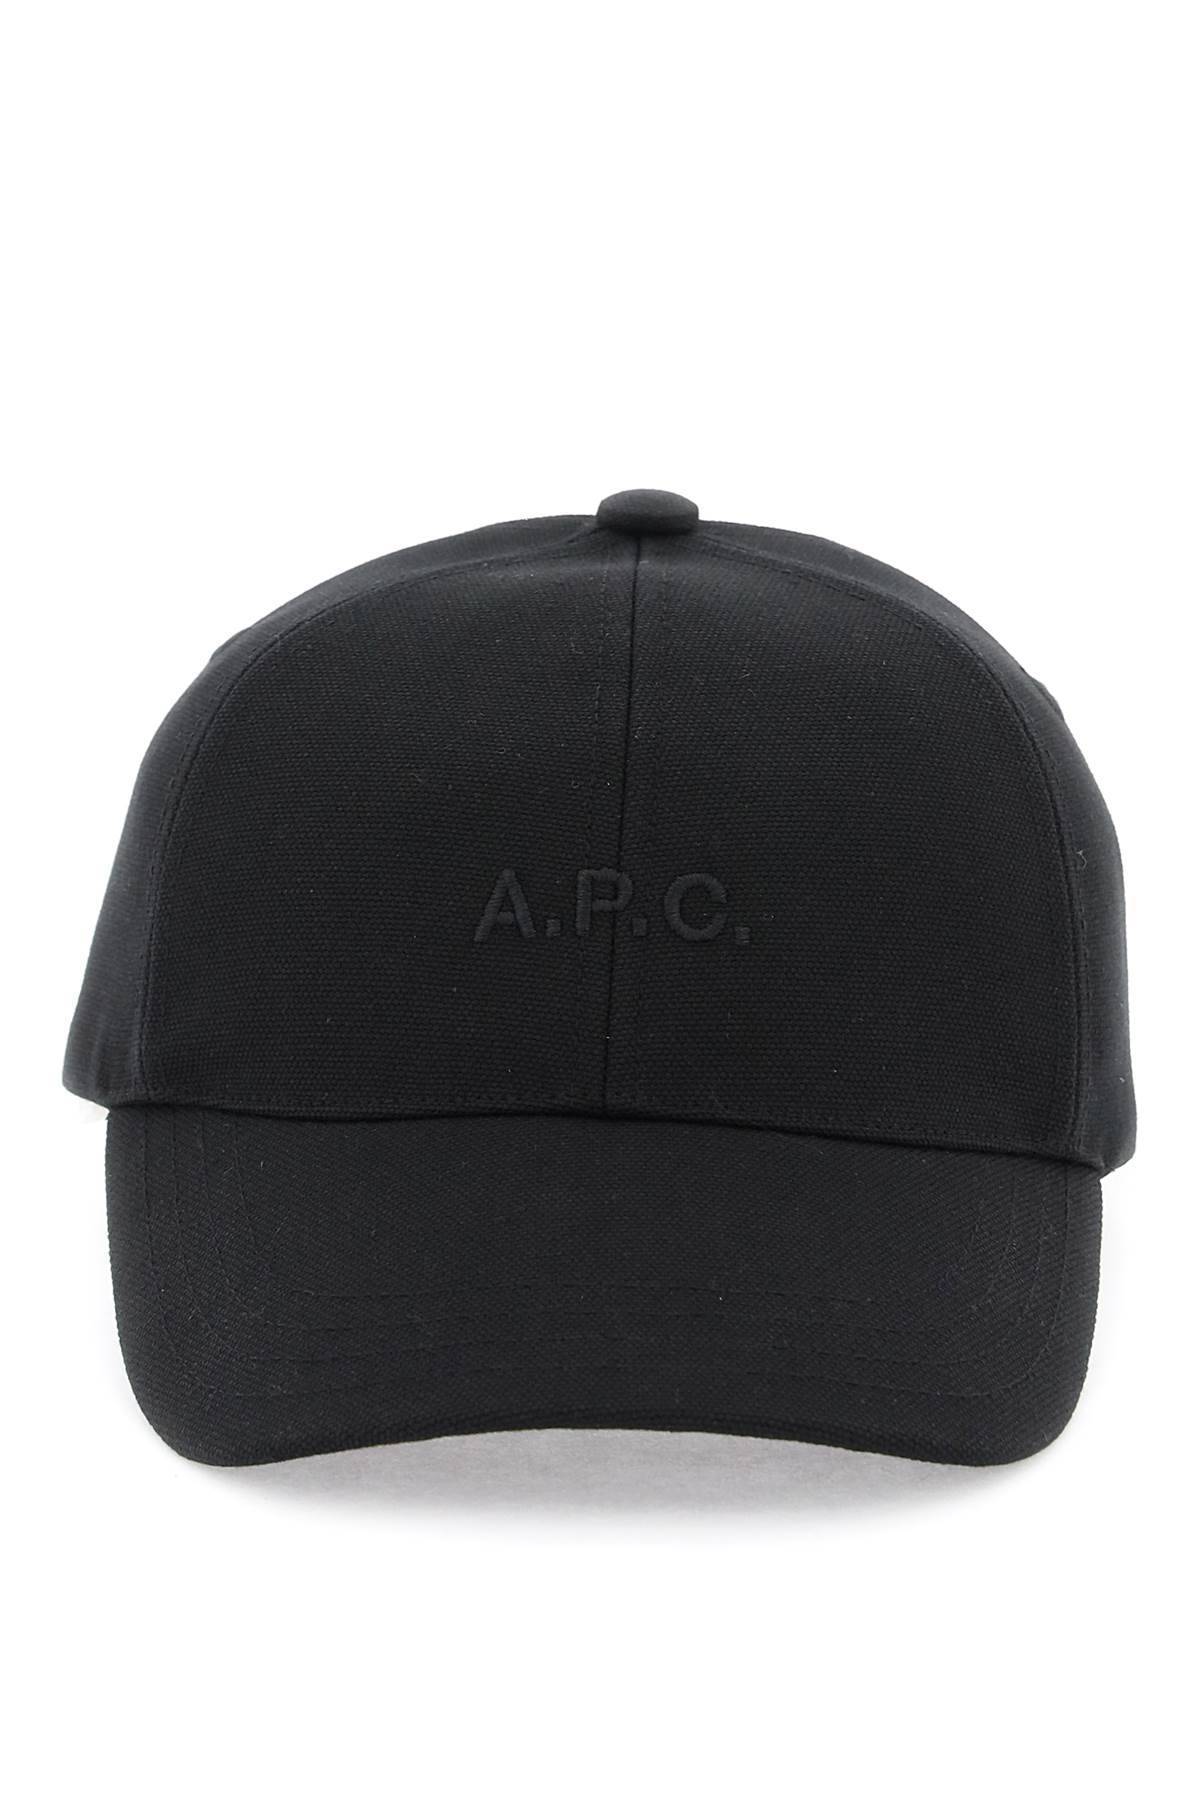 A.P.C. A. P.C. charlie baseball cap